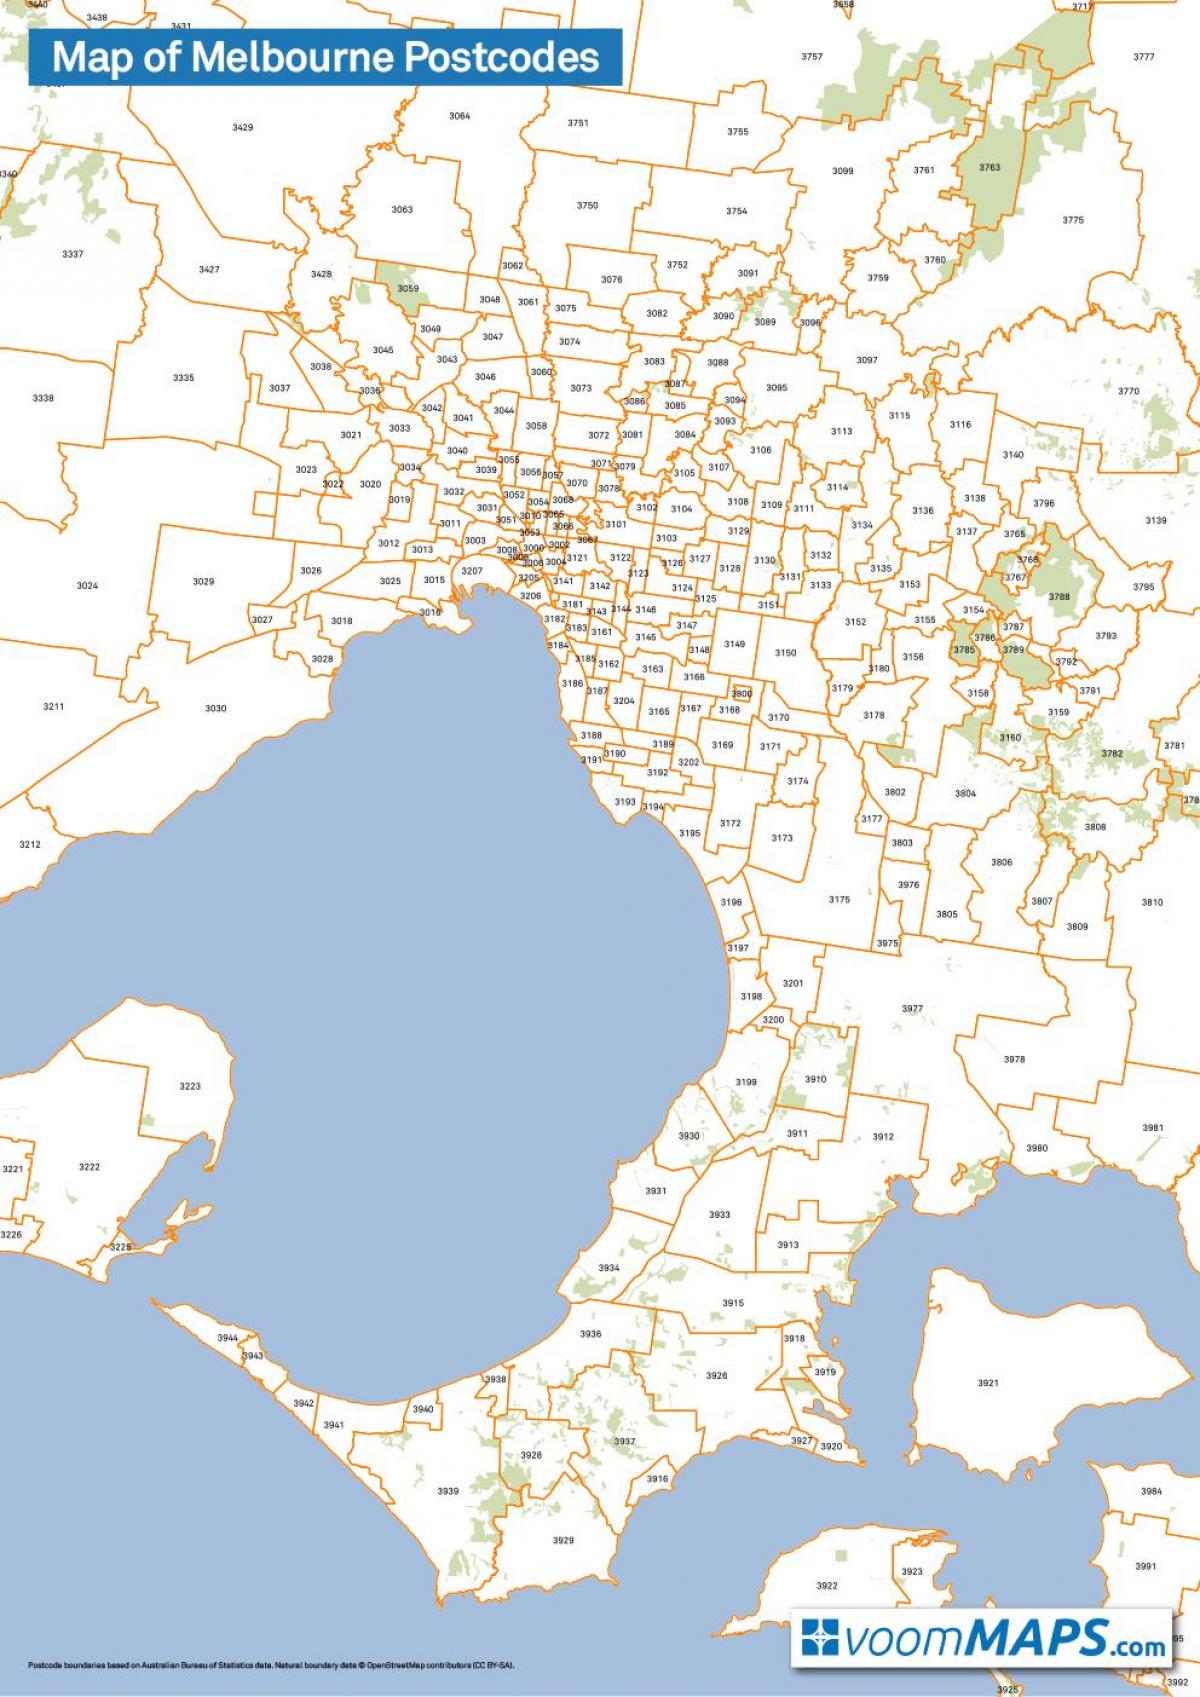 peta Melbourne poskod